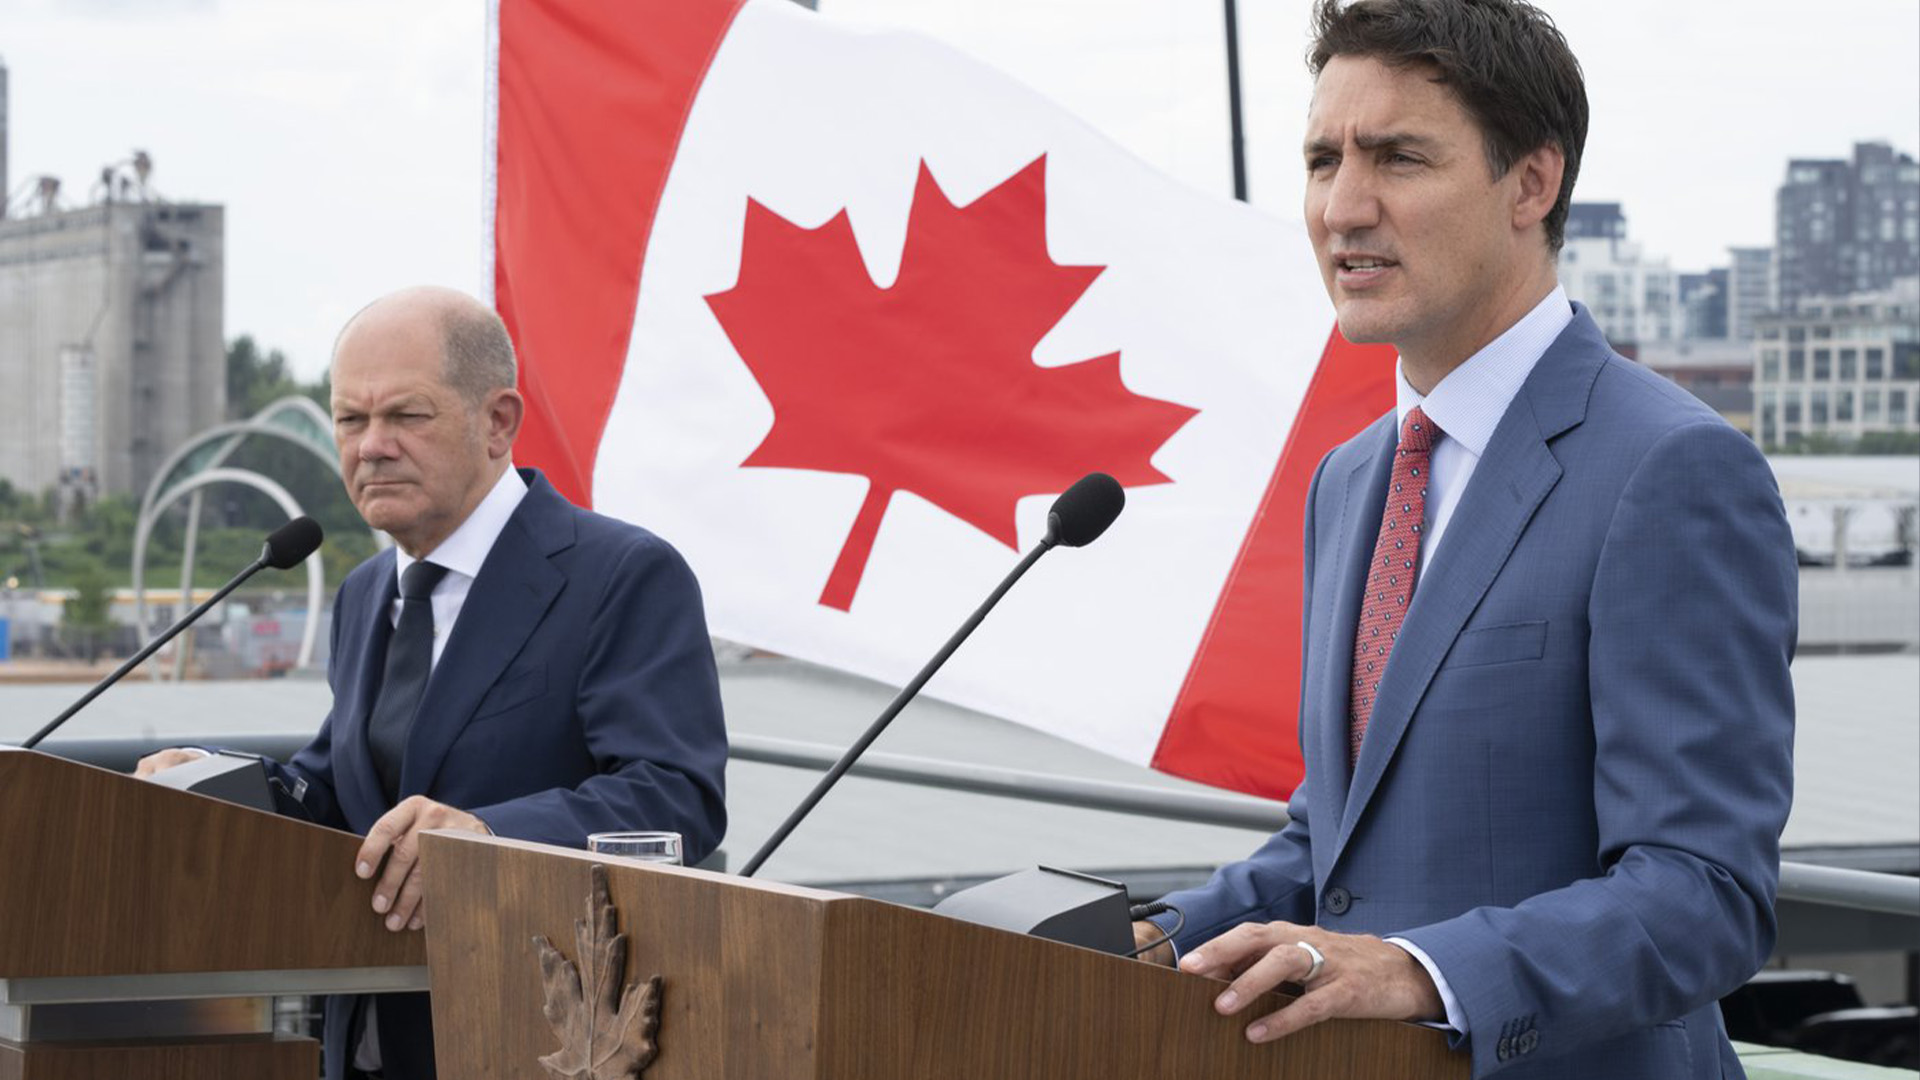 Le premier ministre Justin Trudeau répond à une question à côté du chancelier allemand Olaf Scholz lors d'une conférence de presse à Montréal le lundi 22 août 2022.